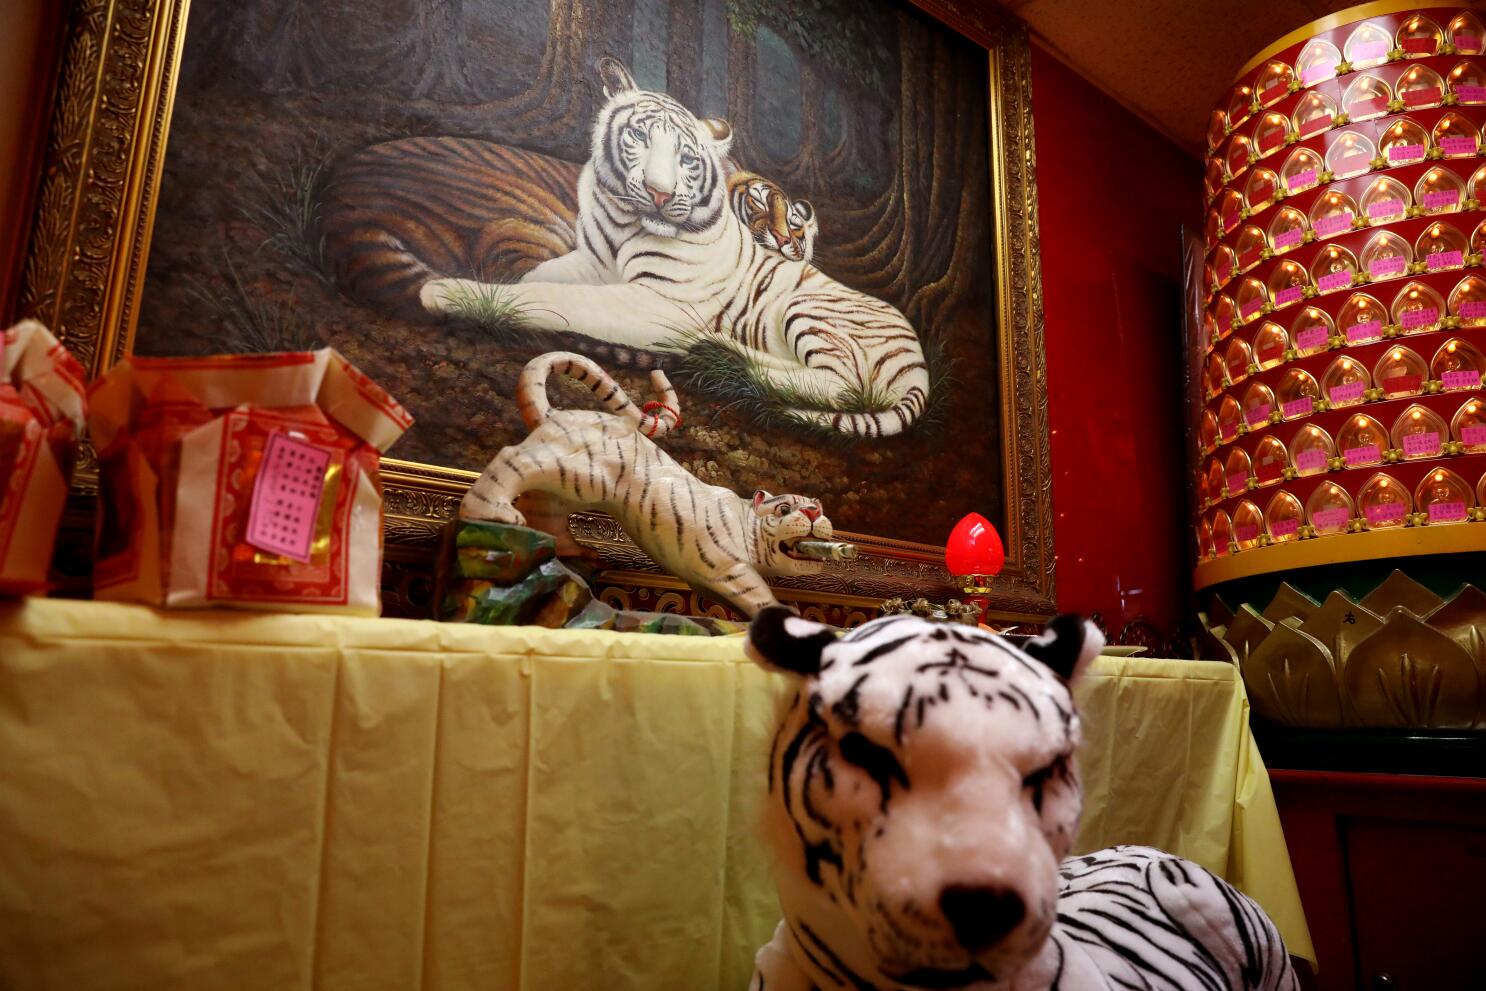 Las Vegas resorts celebrating Year of Tiger in 2022